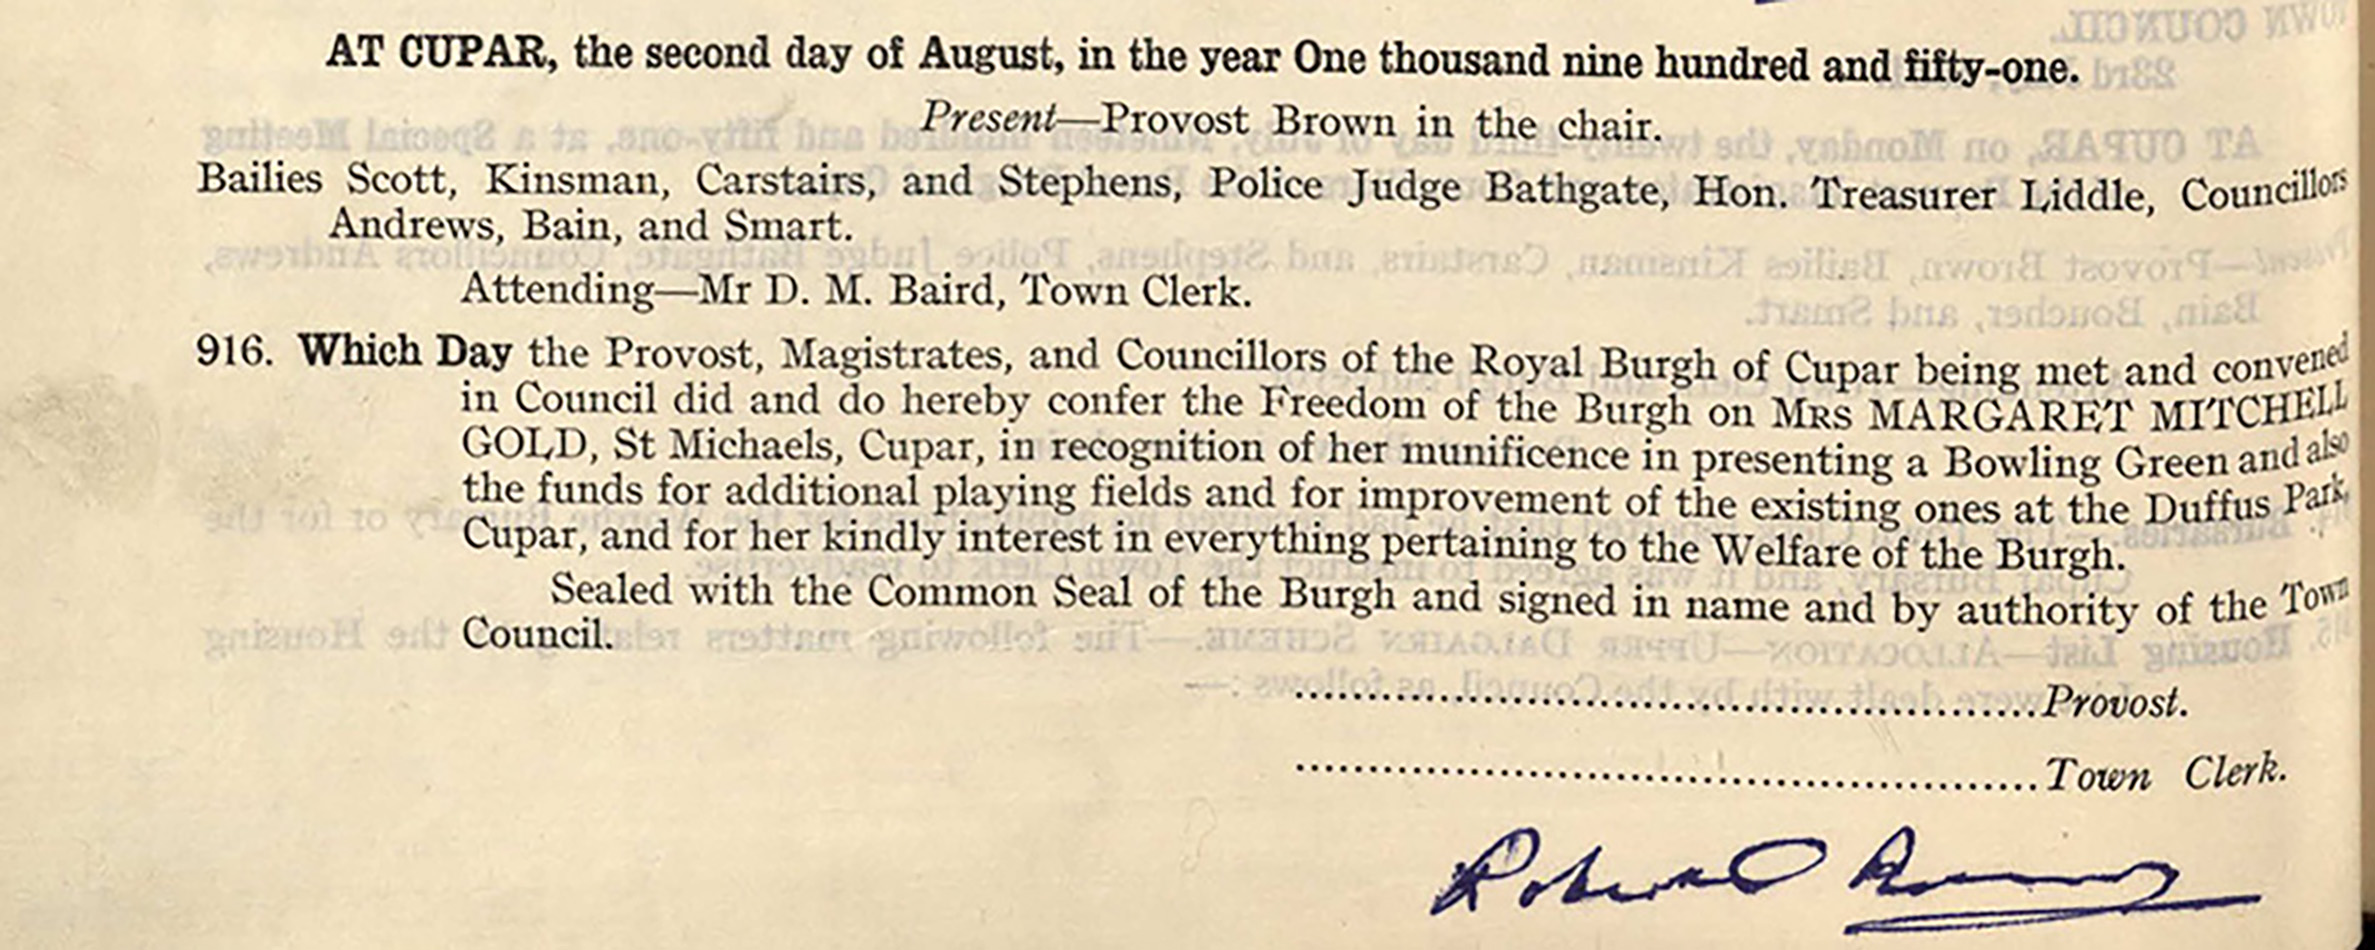 B13-14-30_Cupar_Town_Council_Minutes 2 Aug 1951_1.jpg